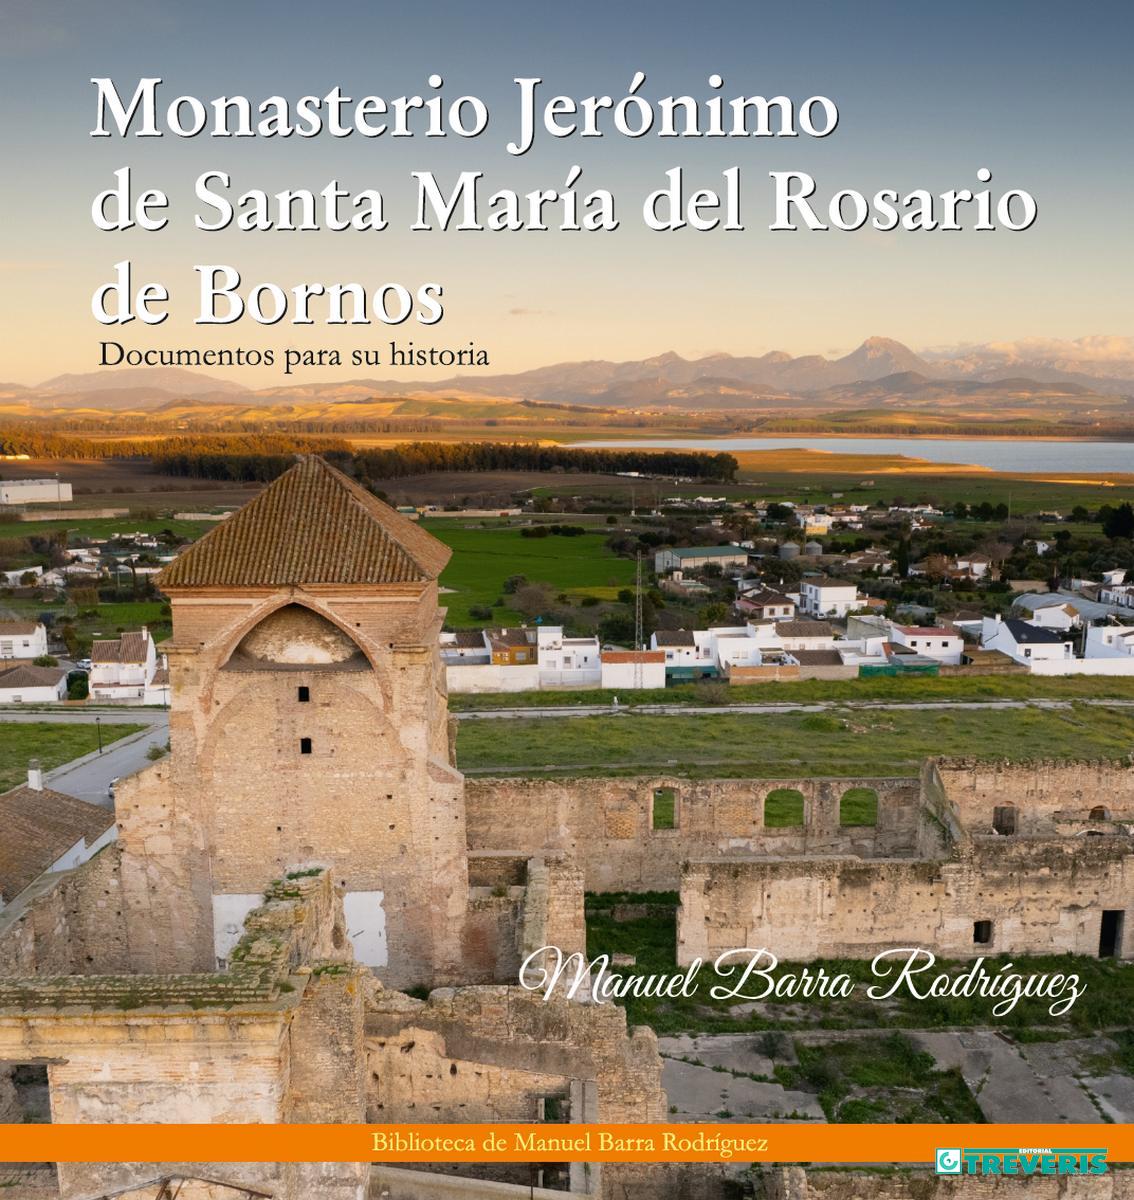 Monasterio Jerónimo de Santa María del Rosario de Bornos. Documentos para su historia.